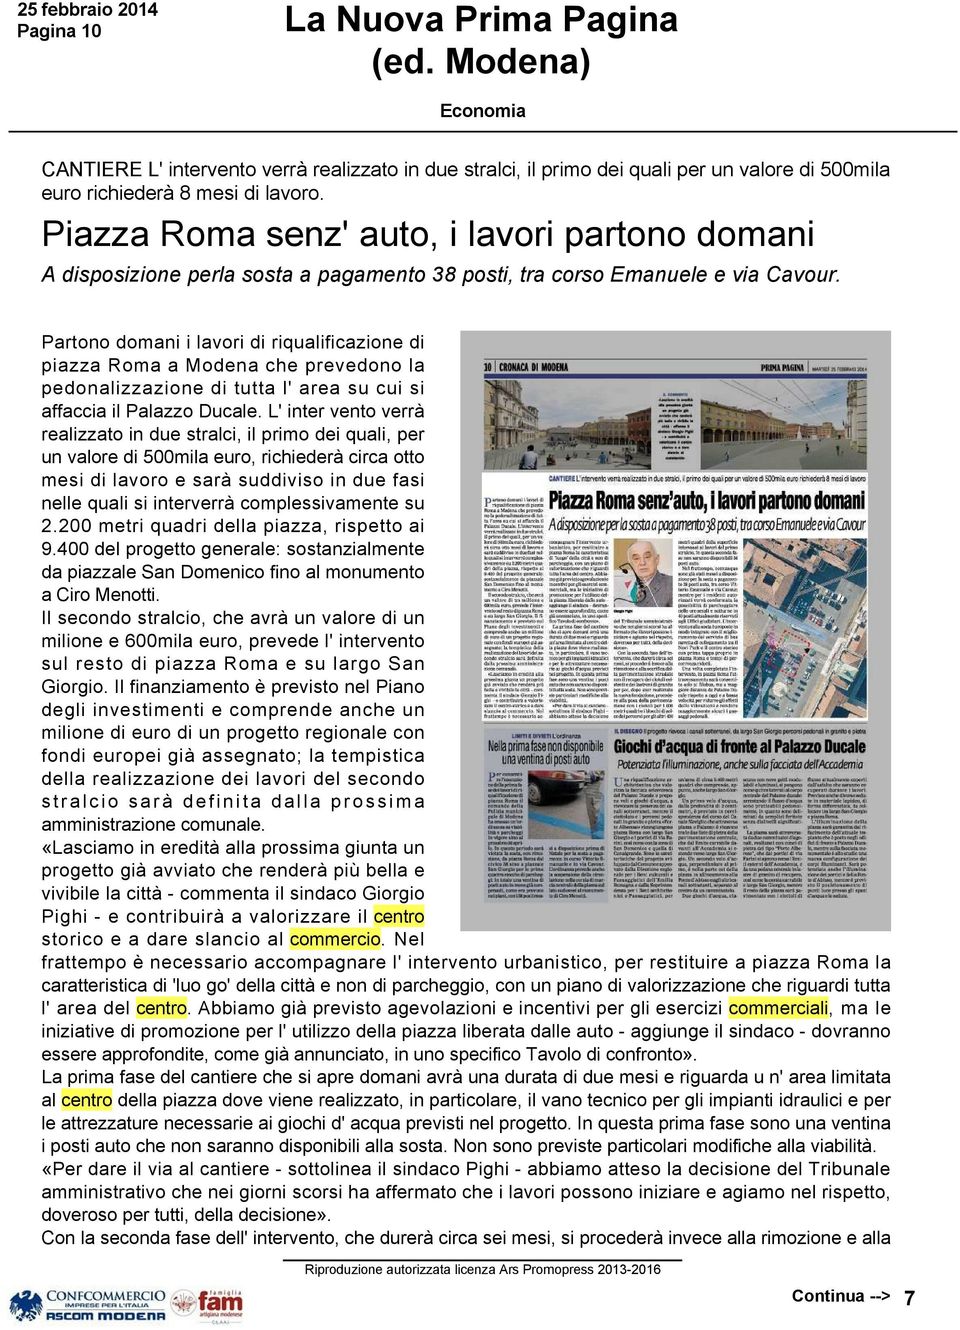 Partono domani i lavori di riqualificazione di piazza Roma a Modena che prevedono la pedonalizzazione di tutta l' area su cui si affaccia il Palazzo Ducale.